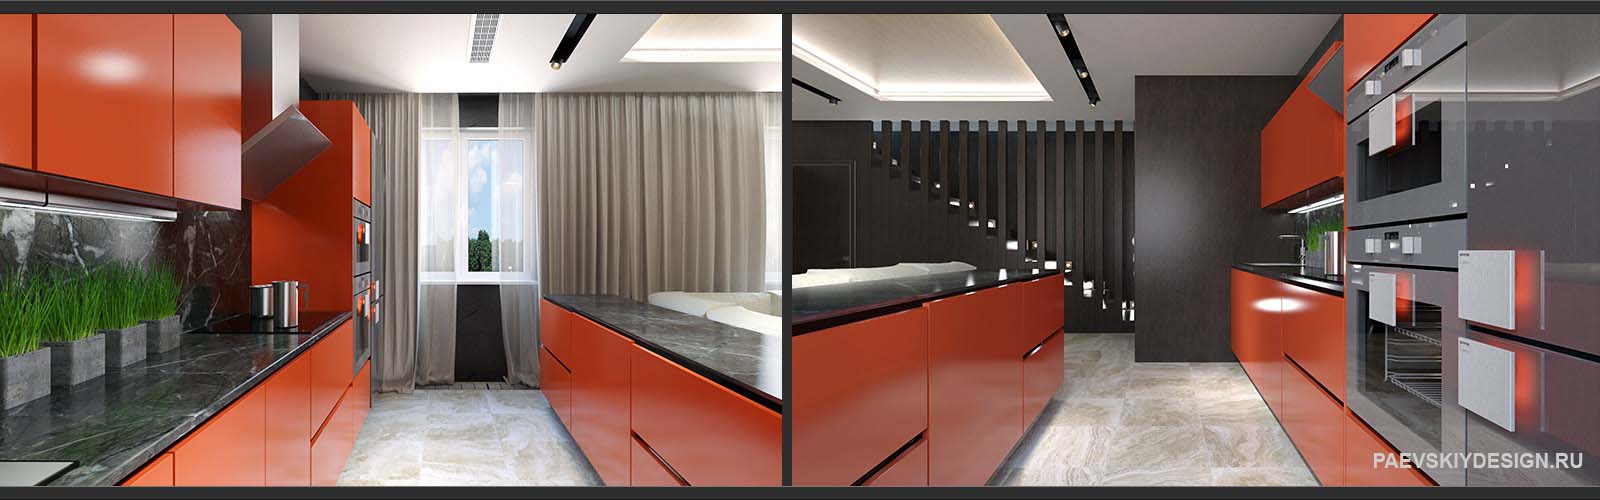 Дизайн проект кухни гостиной таунхауса с оранжевыми фасадами кухни